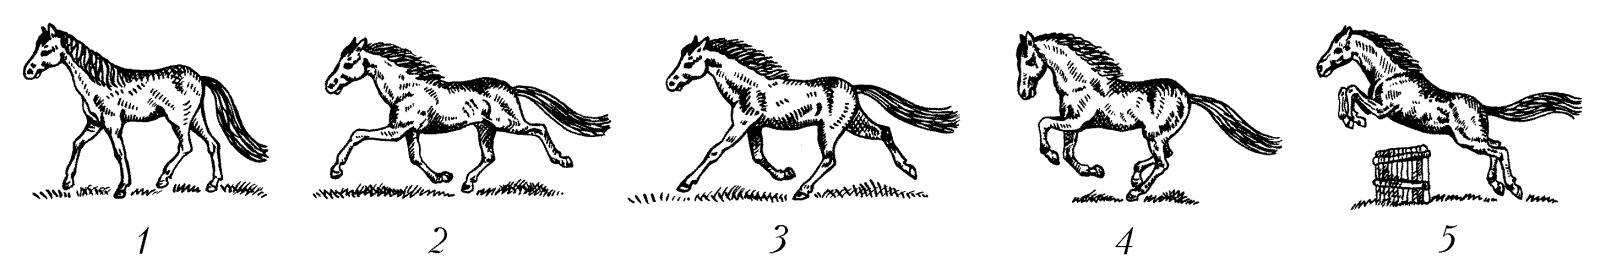 Что такое аллюр: разновидности и характеристика лошадиного бега